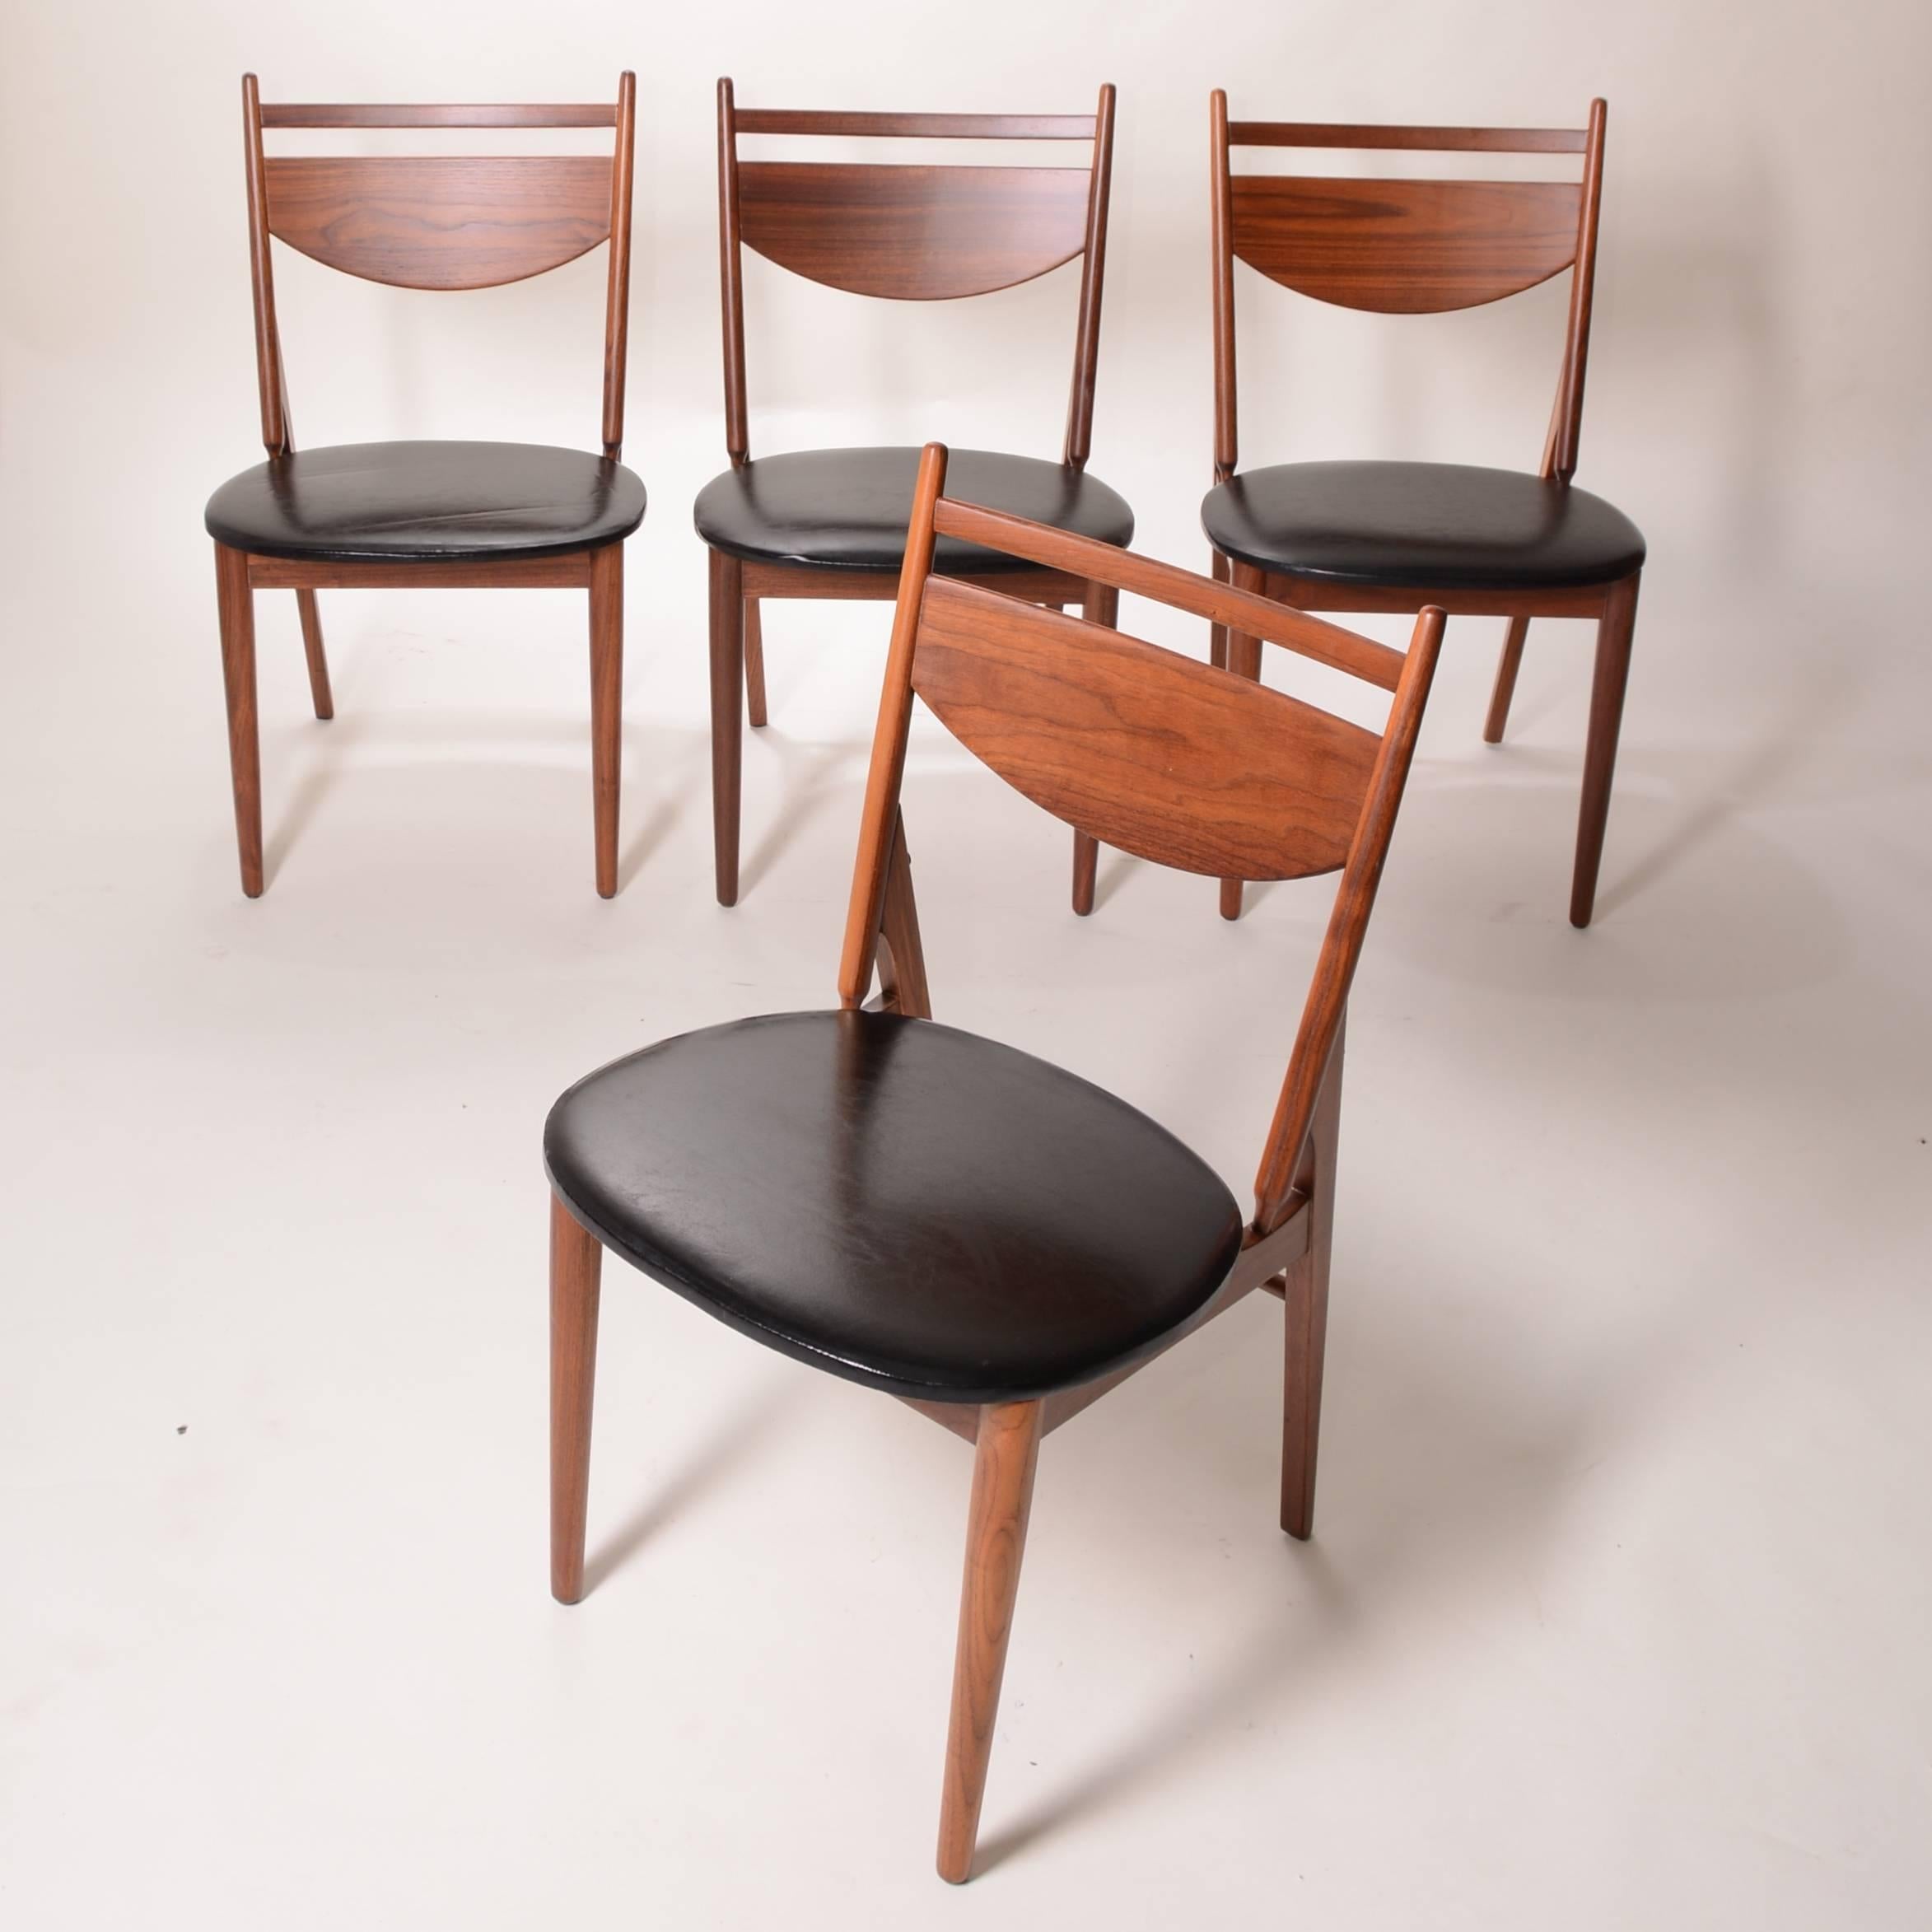 Il s'agit d'un ensemble restauré de quatre chaises de salle à manger en noyer par Greta Grossman pour Glenn of California. Également illustrée et vendue séparément, une table à manger ronde extensible de Grossman.
Cet article se trouve dans notre